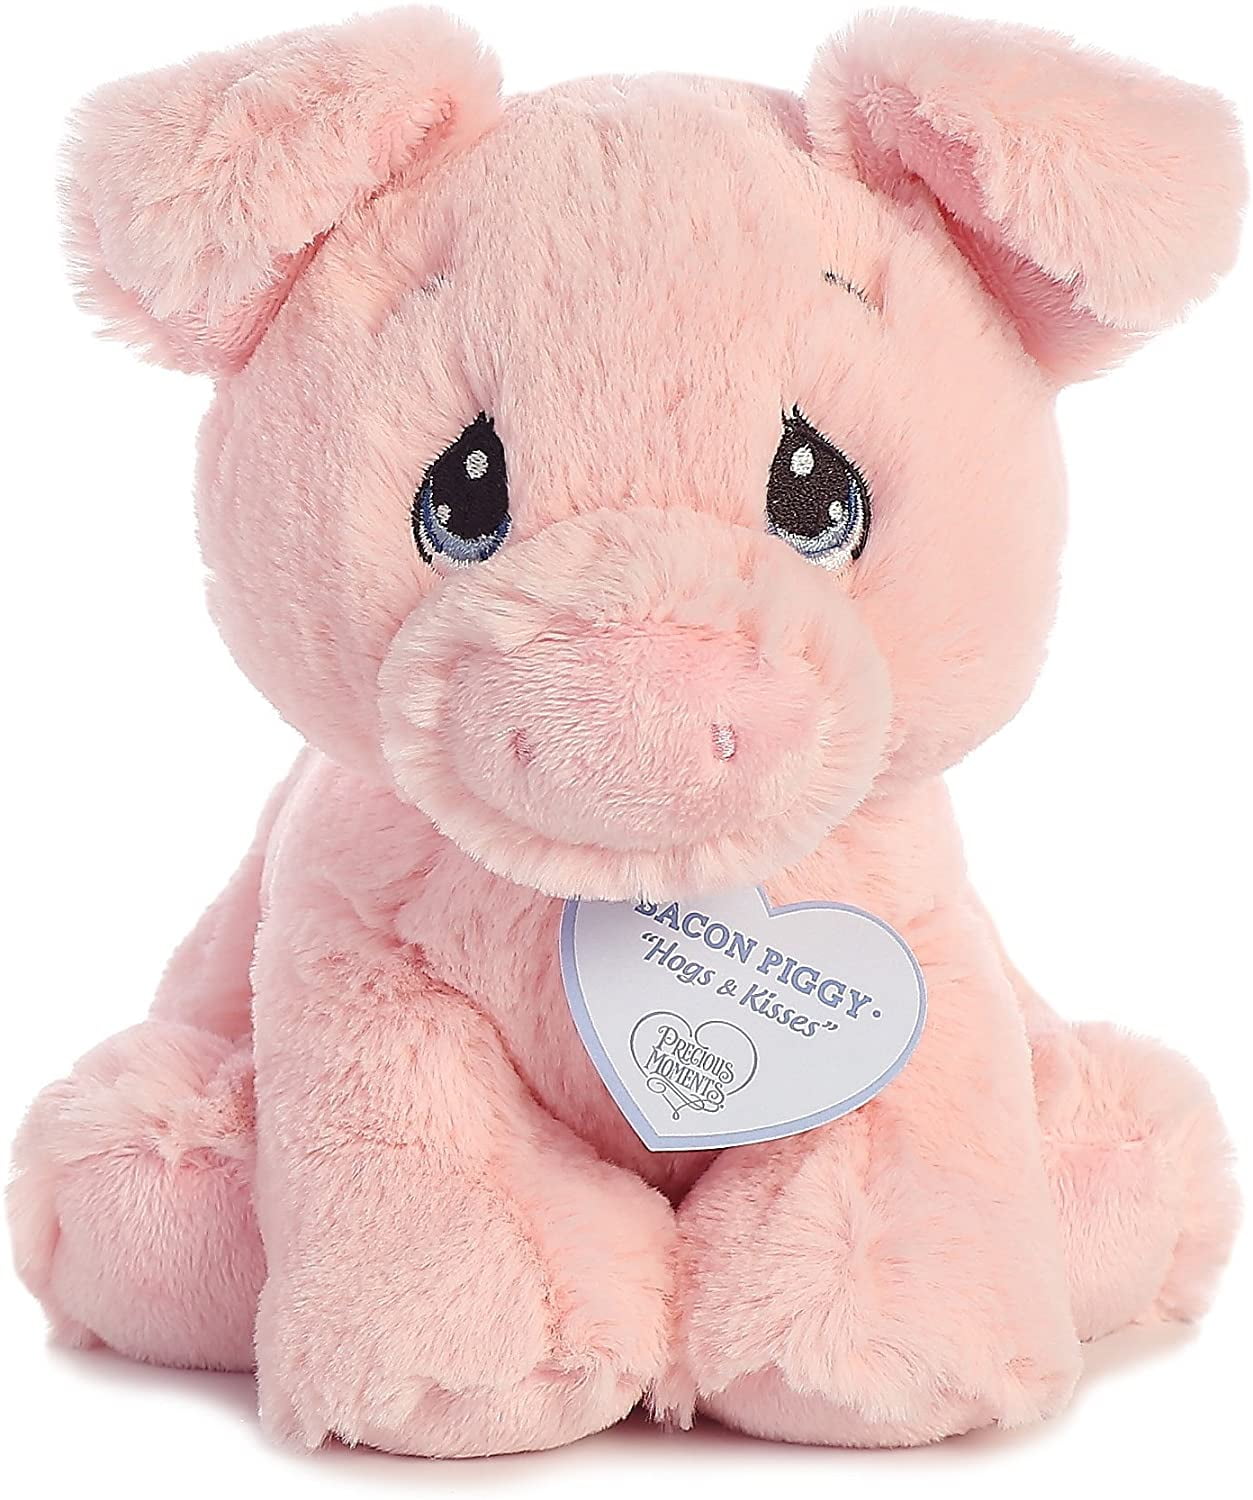 Tubbie Wubbies 12" Plush Pig by Aurora 30868 for sale online 